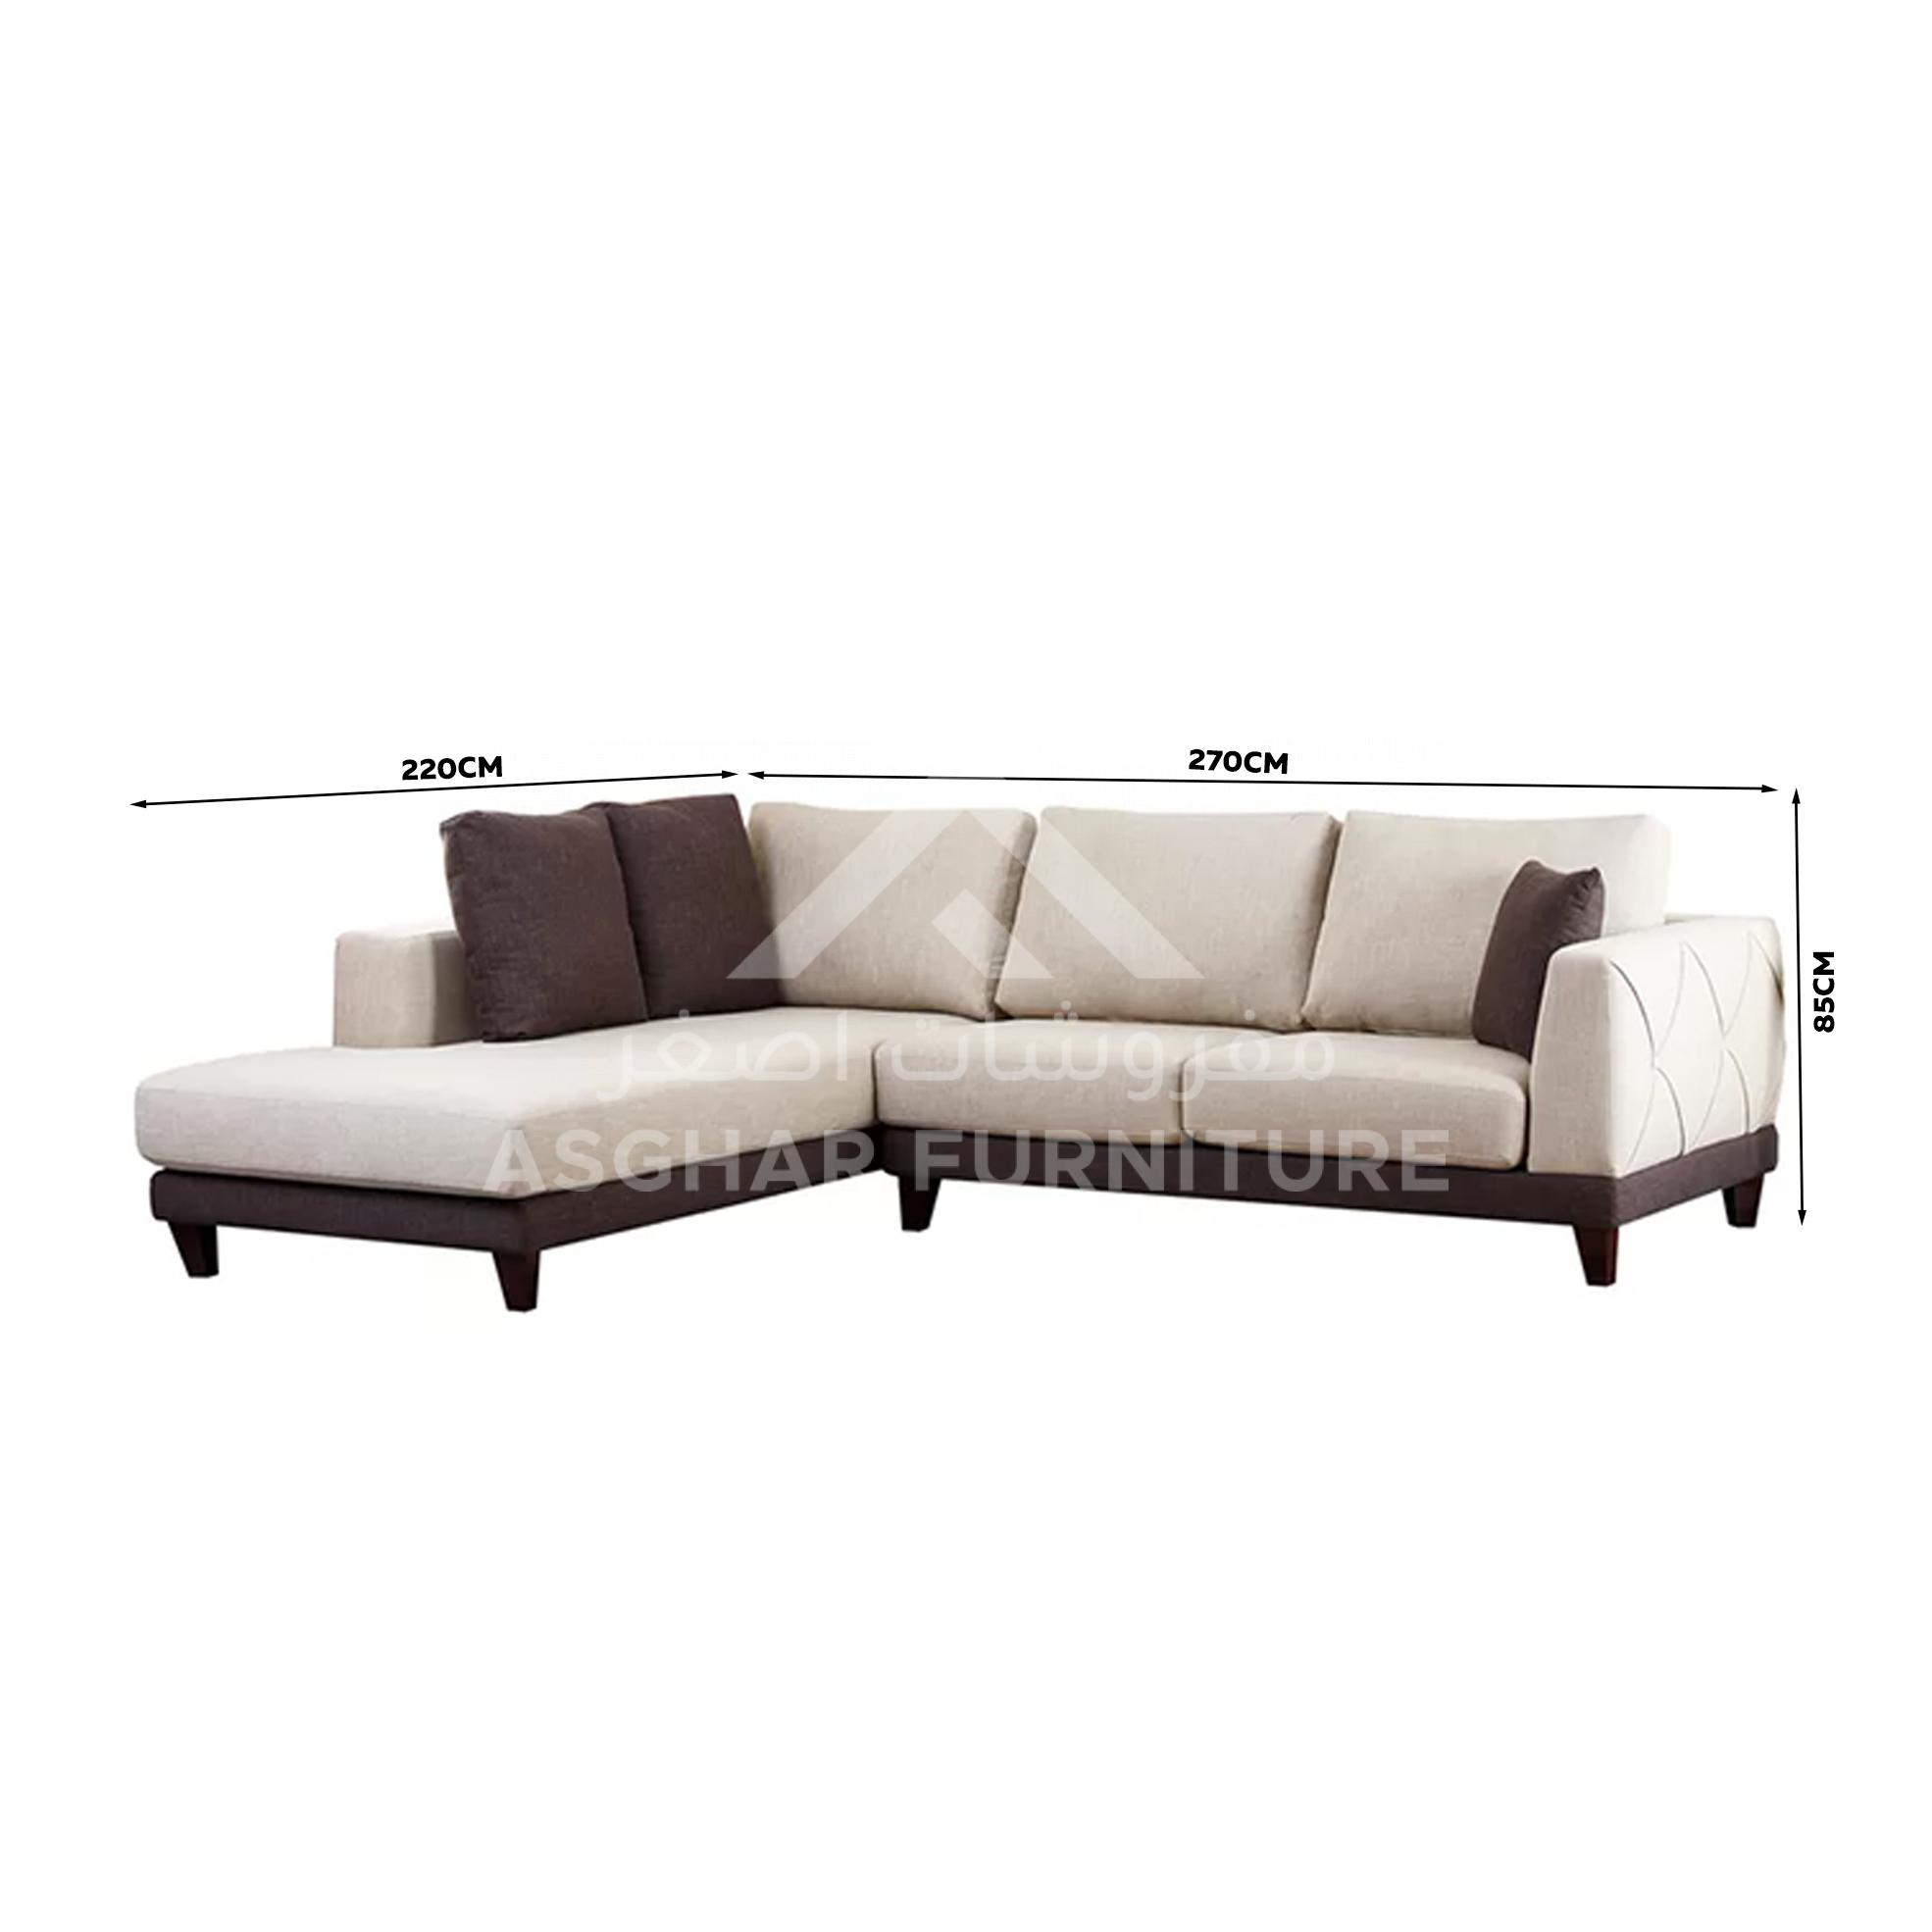 Venuti Sectional Sofa - Asghar Furniture: Shop Online Home Furniture ...